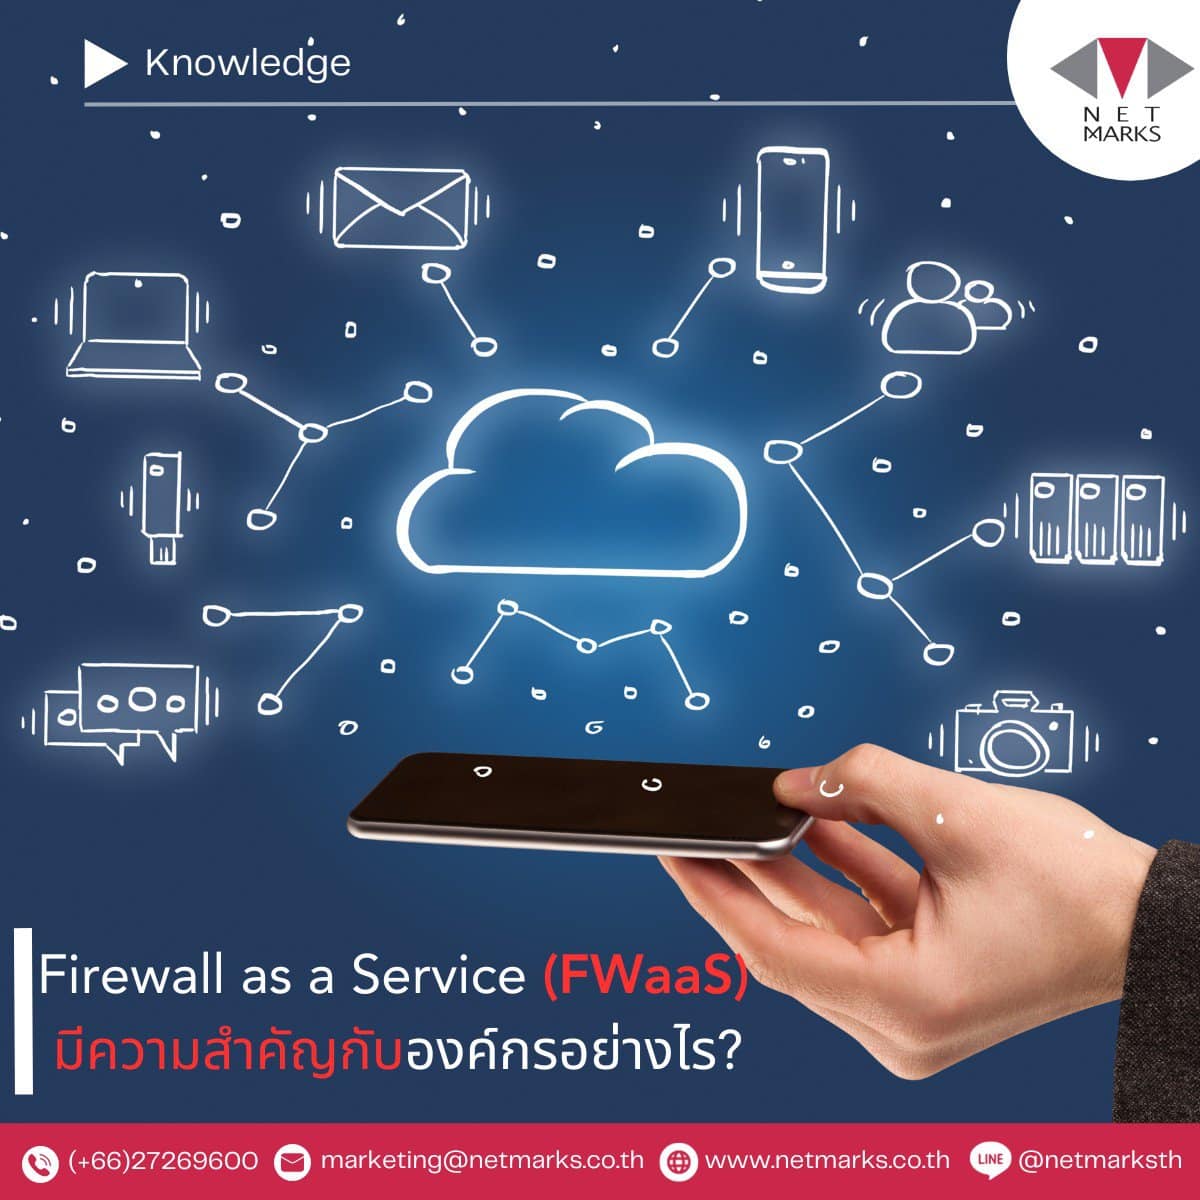 Firewall as a Service (FWaaS): การป้องกันความปลอดภัยของเครือข่ายในรูปแบบคลาวด์